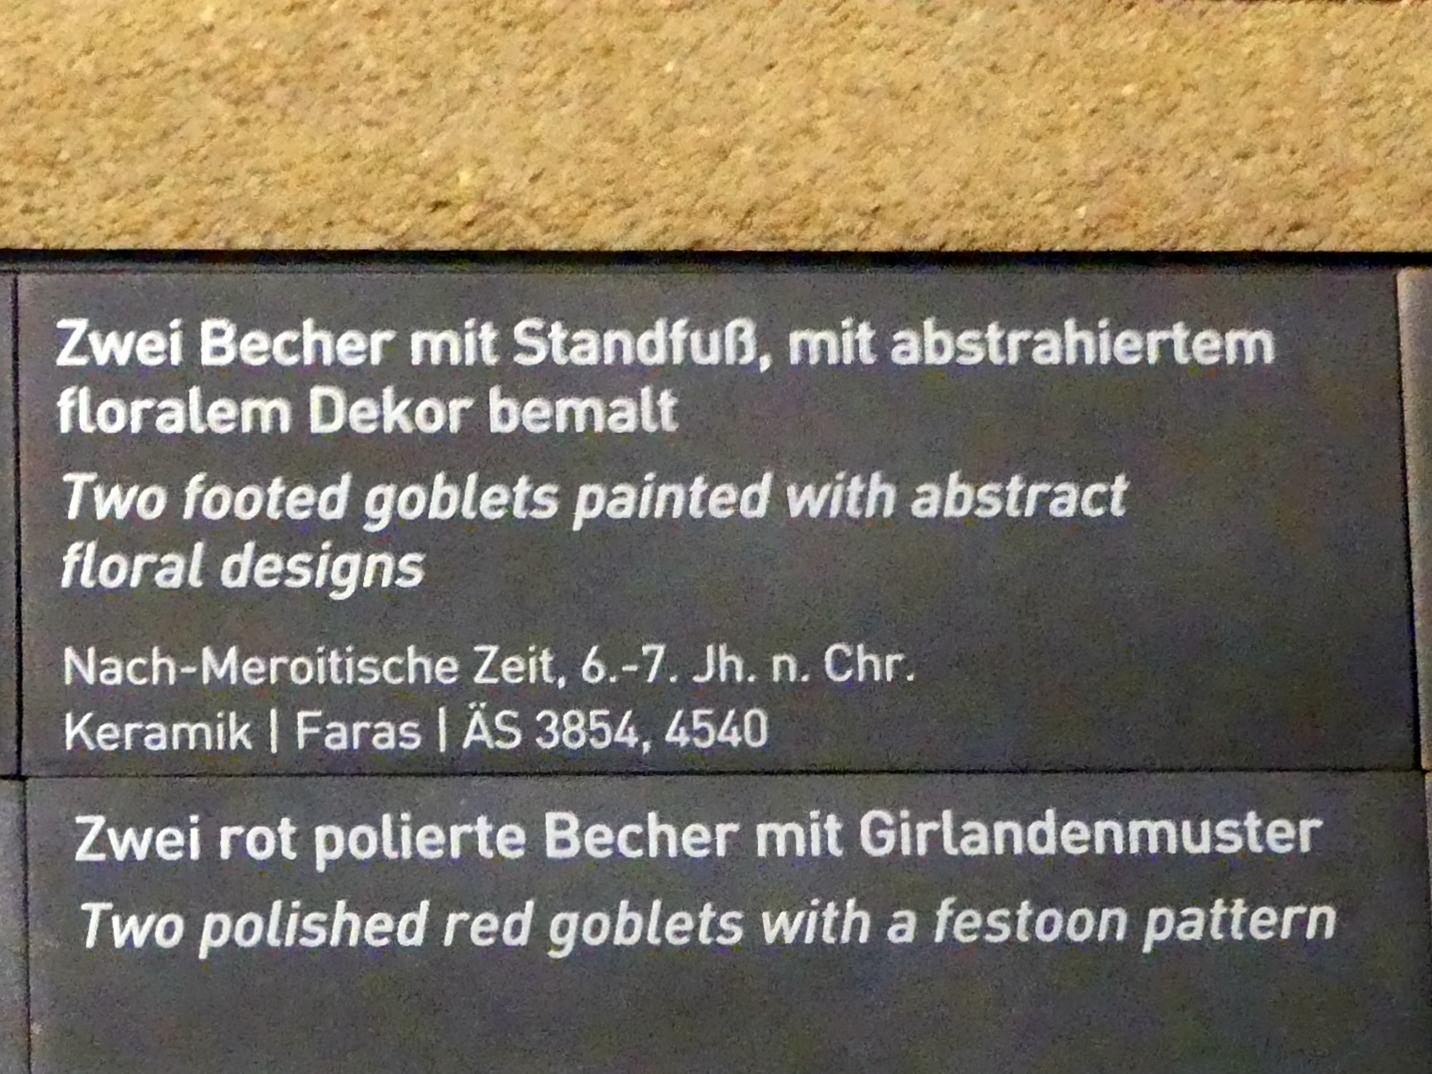 Zwei Becher mit Standfuß, mit abstrahiertem floralem Dekor bemalt, Nachmeroitische Zeit, 400 - 700, 500 - 700, Bild 2/2